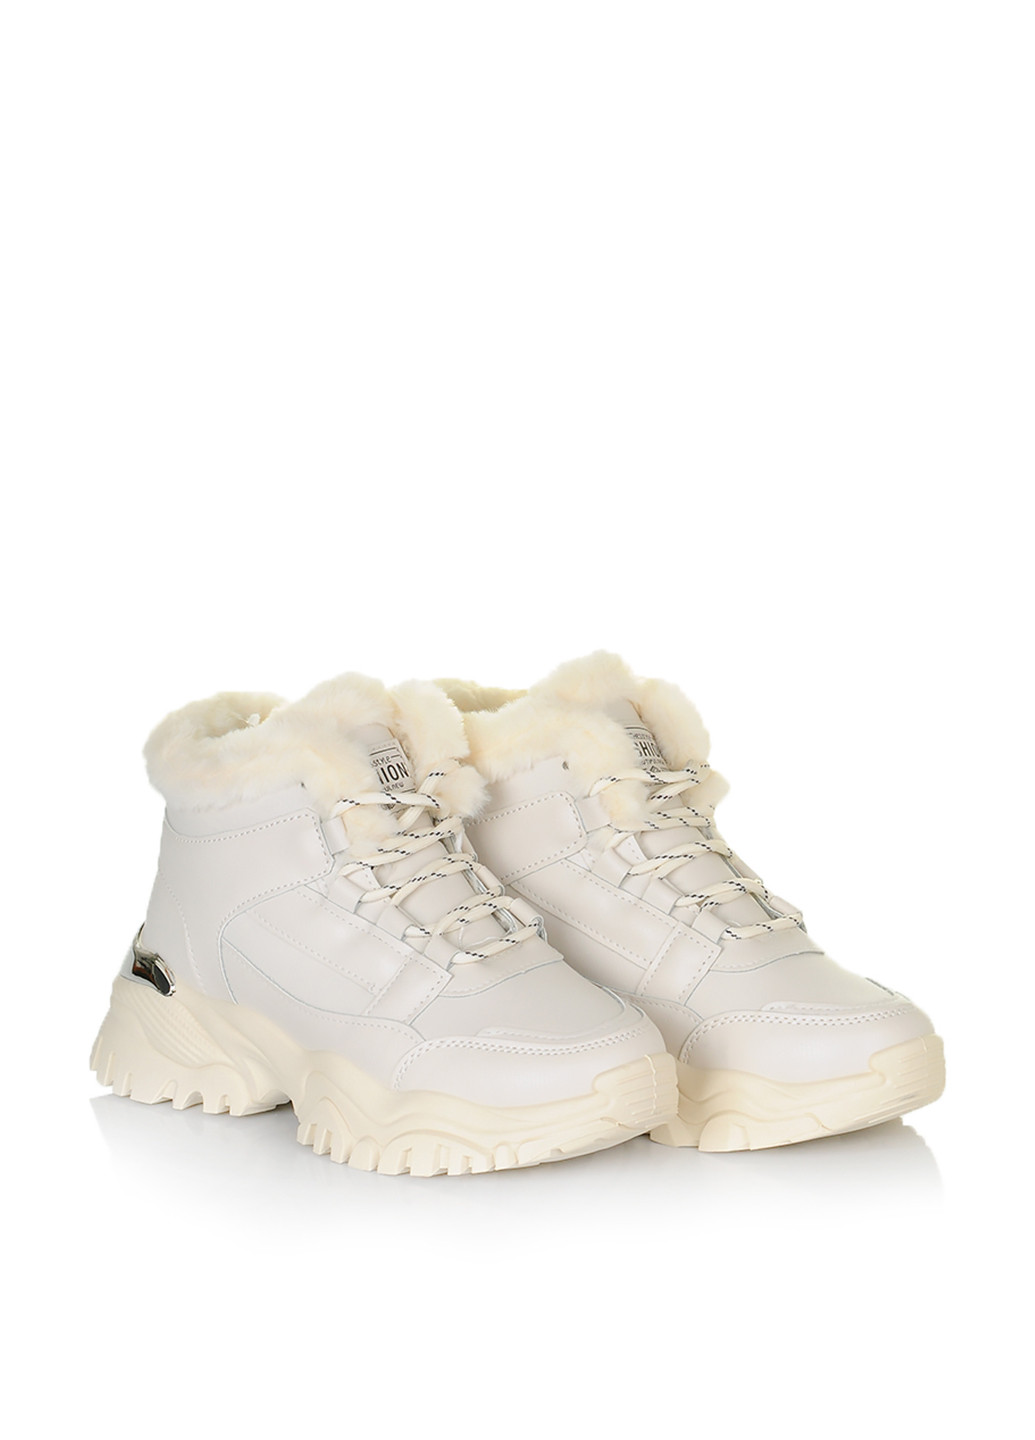 Светло-бежевые зимние ботинки Dafuyuan